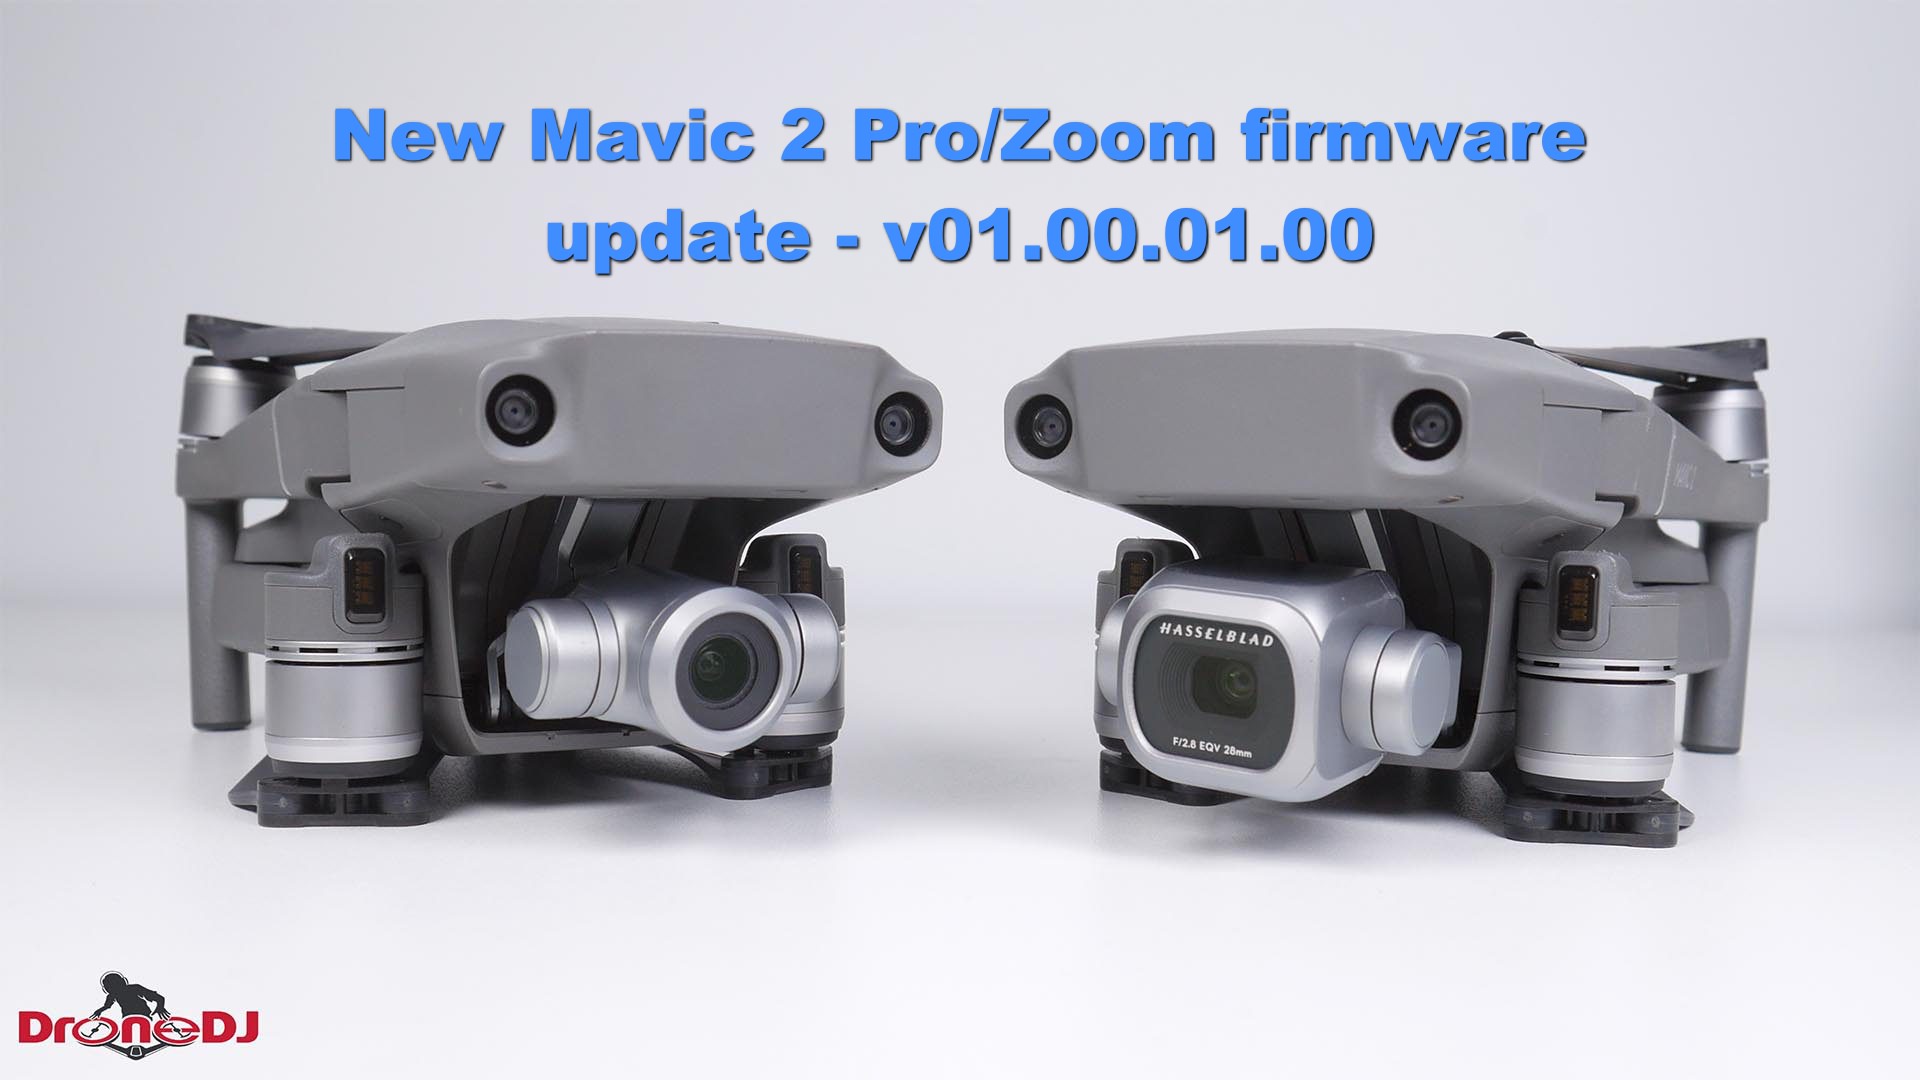 Firmware update v01.00.01.00 for the DJI Mavic 2 Pro/Zoom